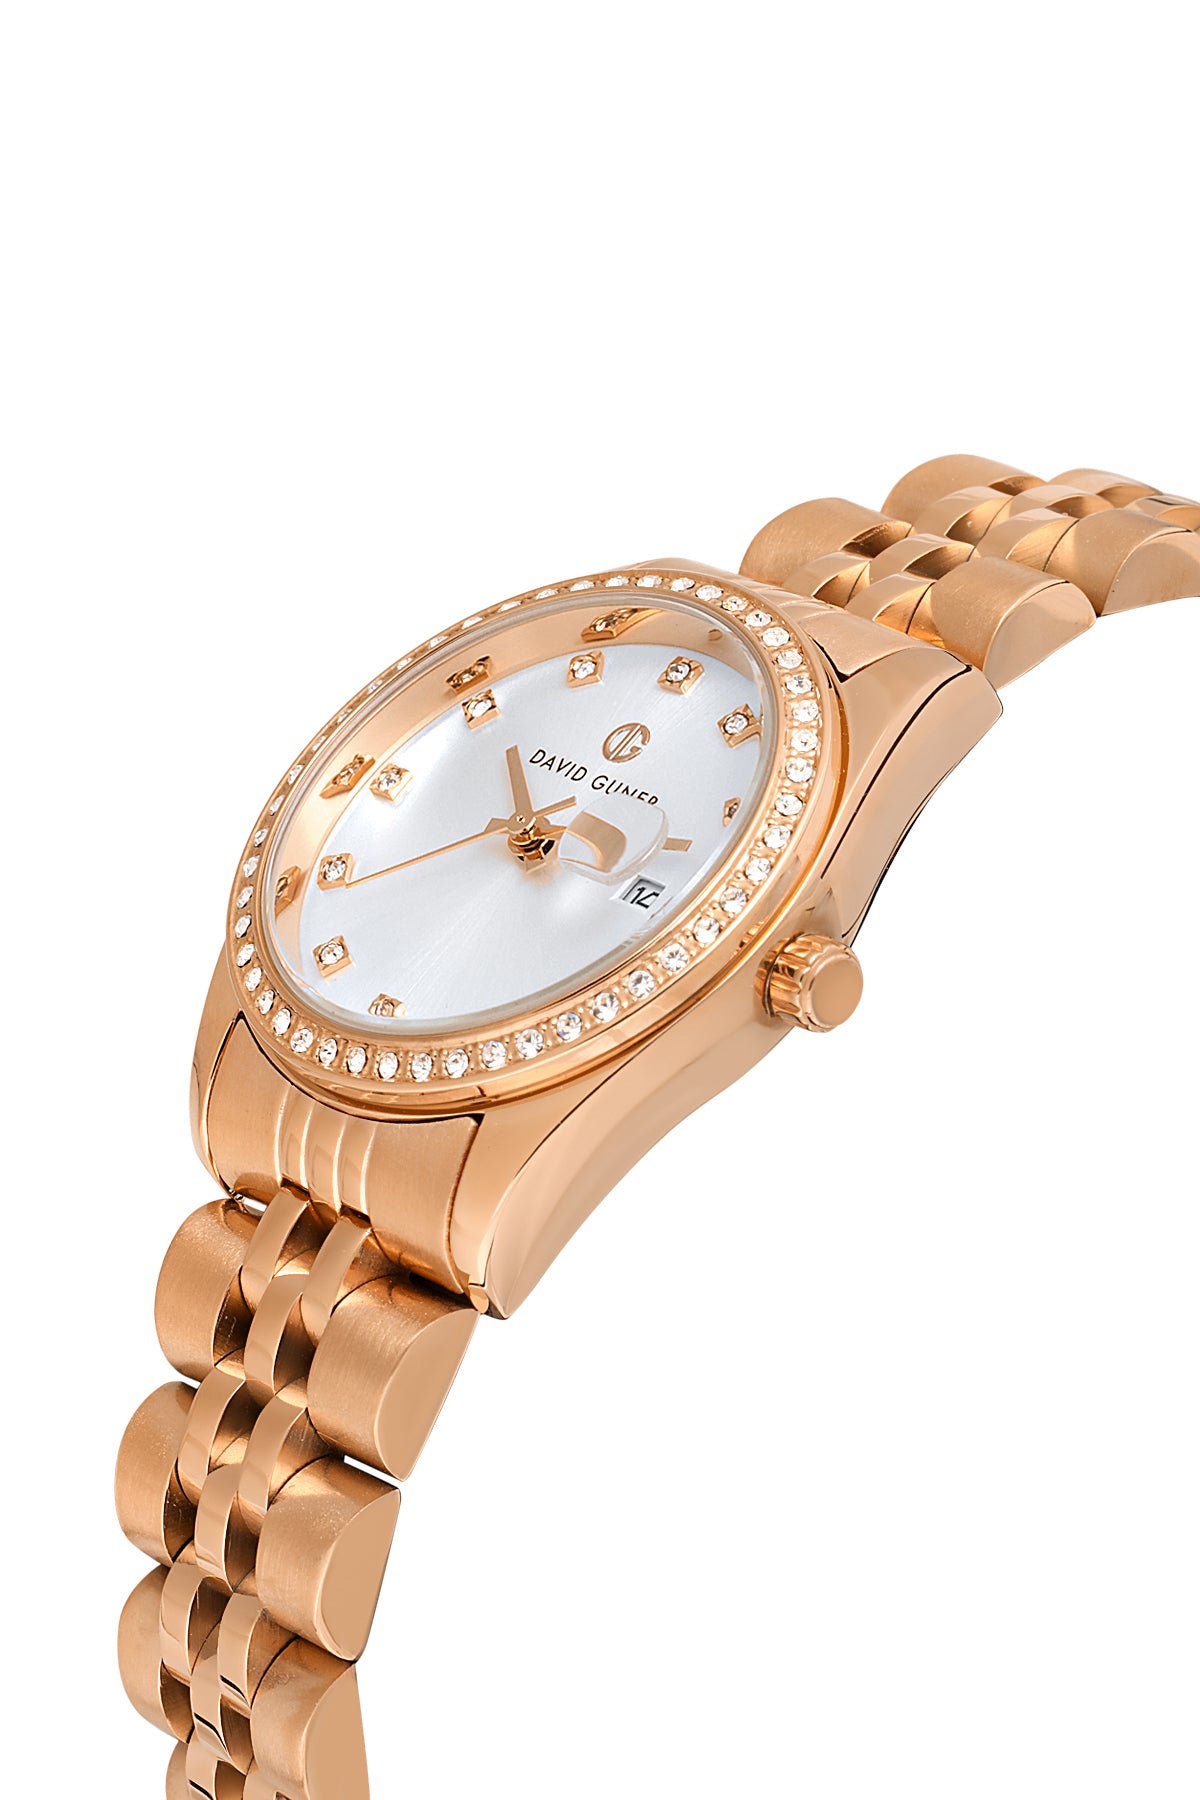 David Guner Rose Plated Silver Dial Calendar Women's Wristwatch